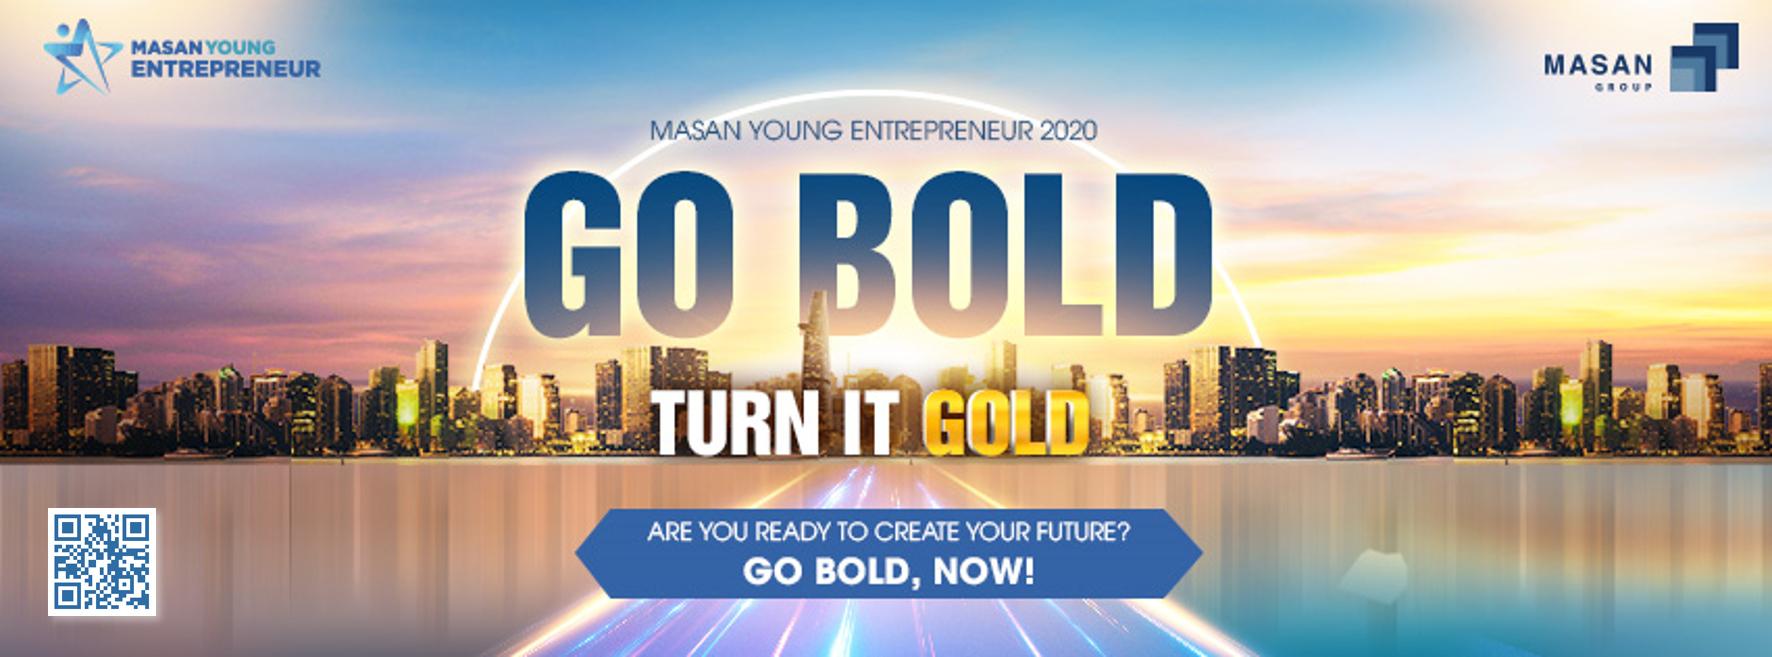 Chương trình Masan Young Entrepreneur 2020 (MYE 2020) đã bắt đầu - Xã hội học - Công tác xã picture picture